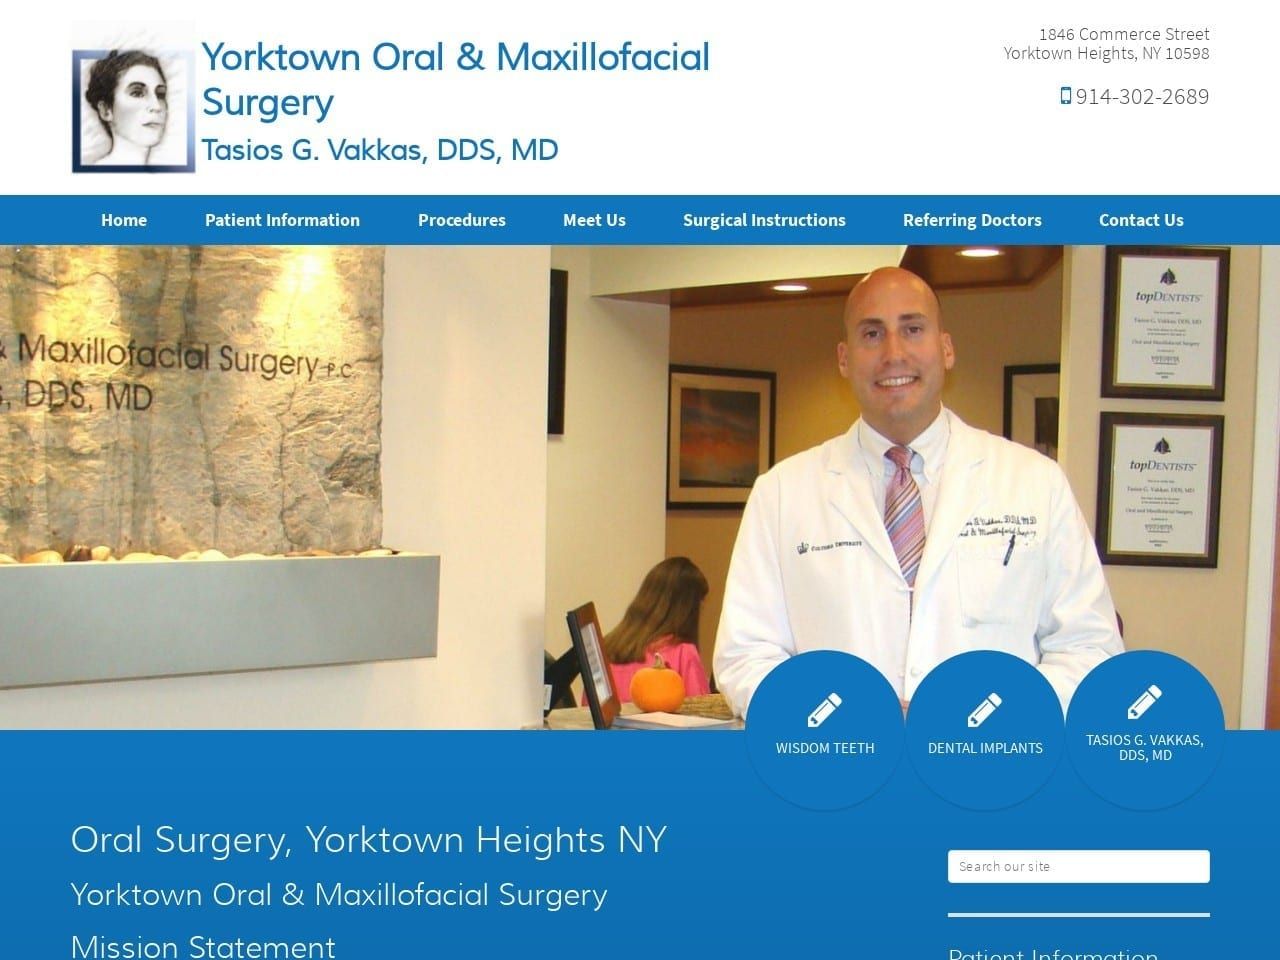 Tasios G. Vakkas DDS MD Website Screenshot from yorktownoralsurgery.com